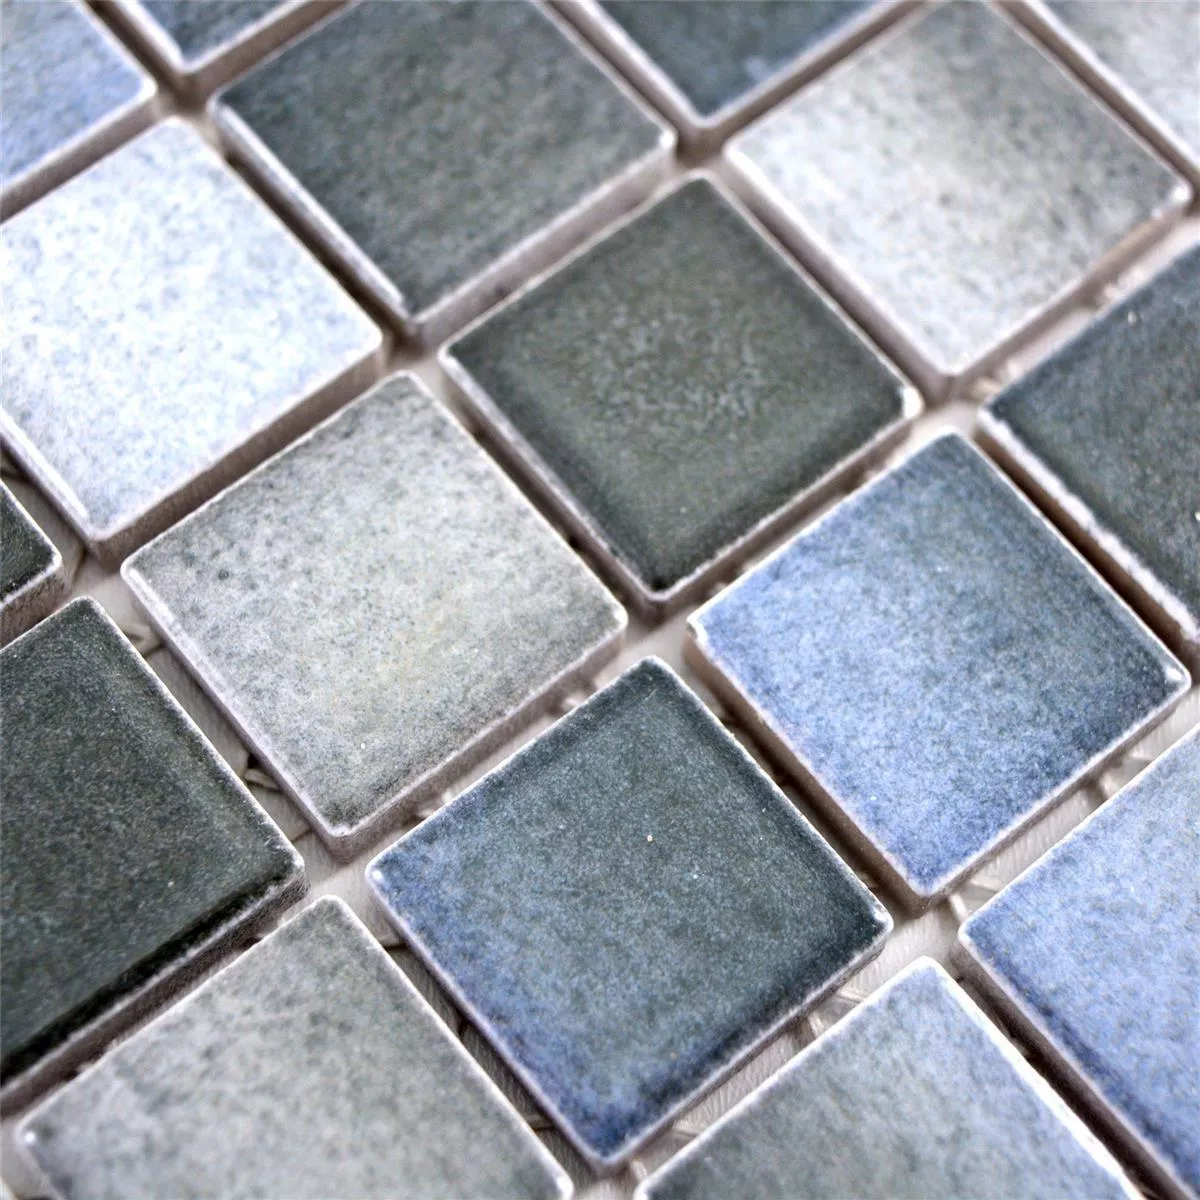 Ceramic Mosaic Tiles Picasso Grey Blue